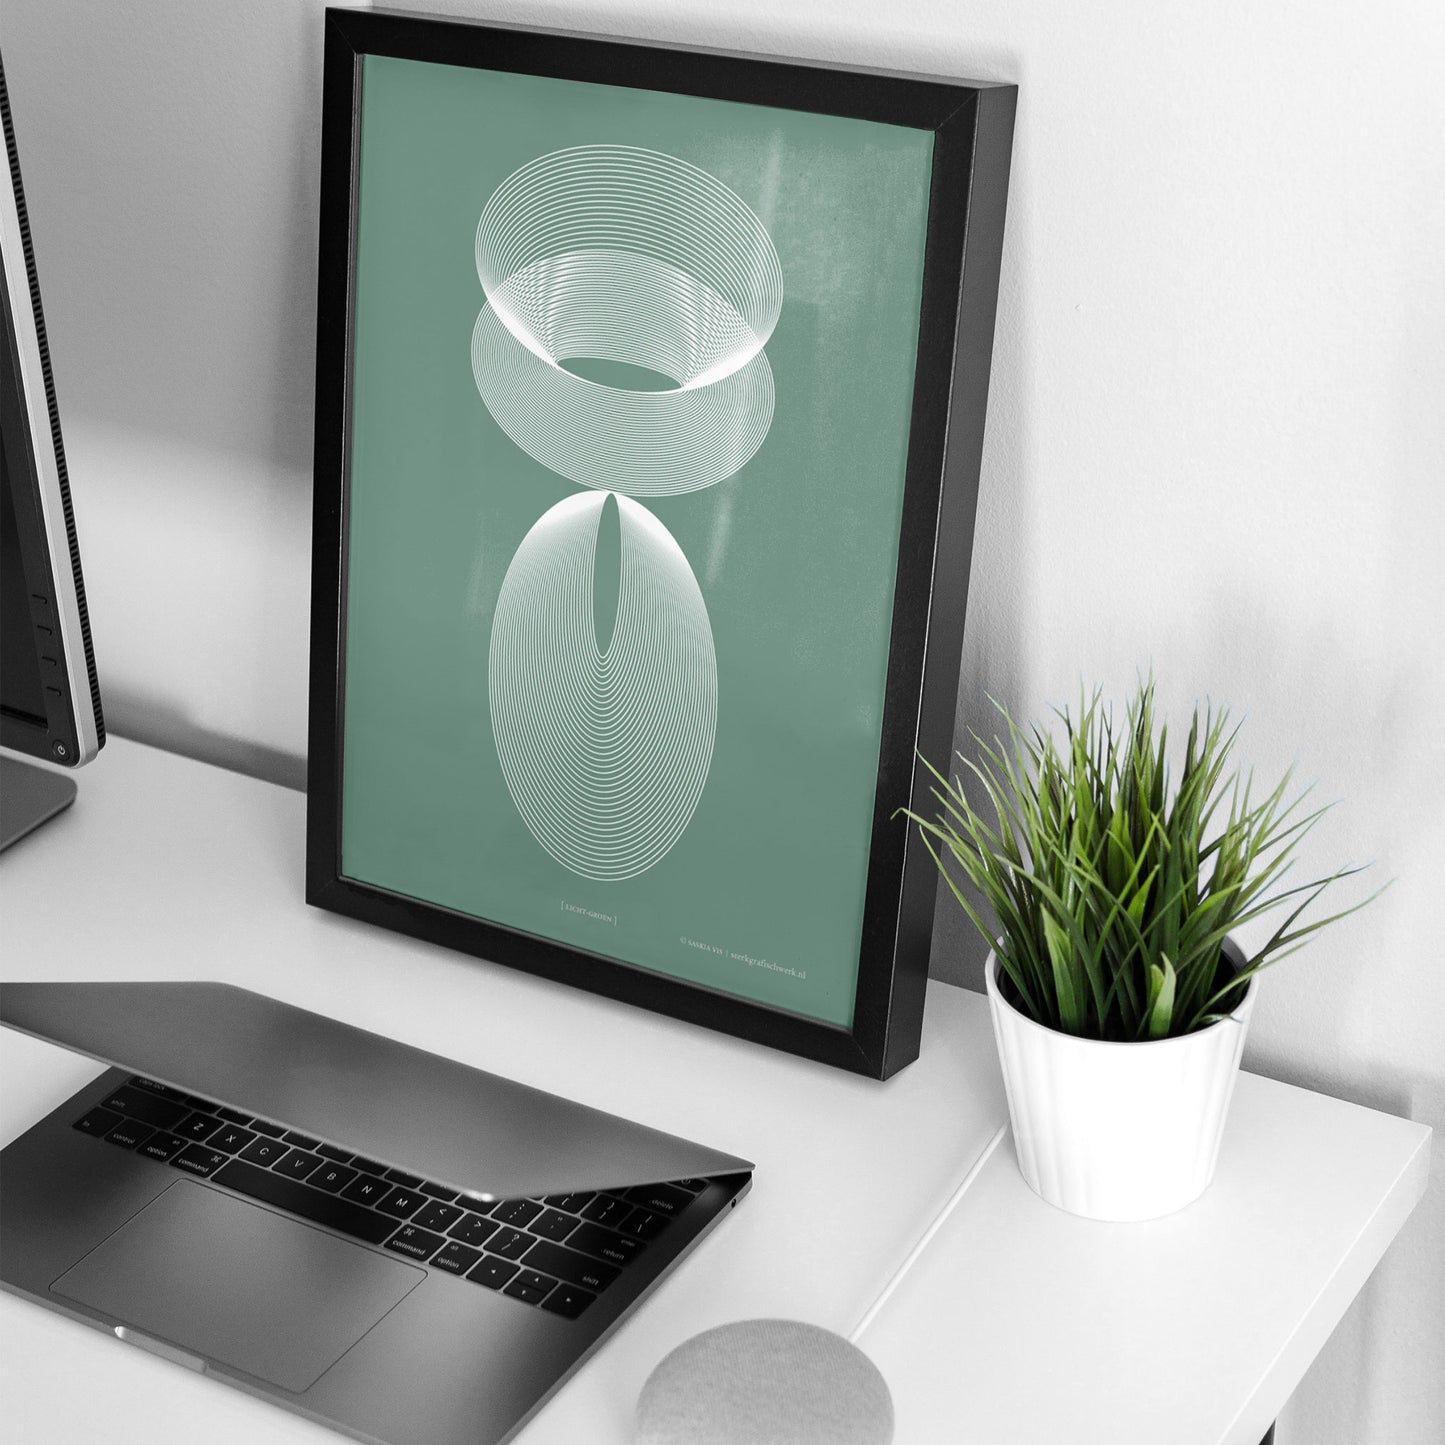 Productafbeelding poster "licht-groen" 4de impressie ingelijst staande op een bureau in een interieur